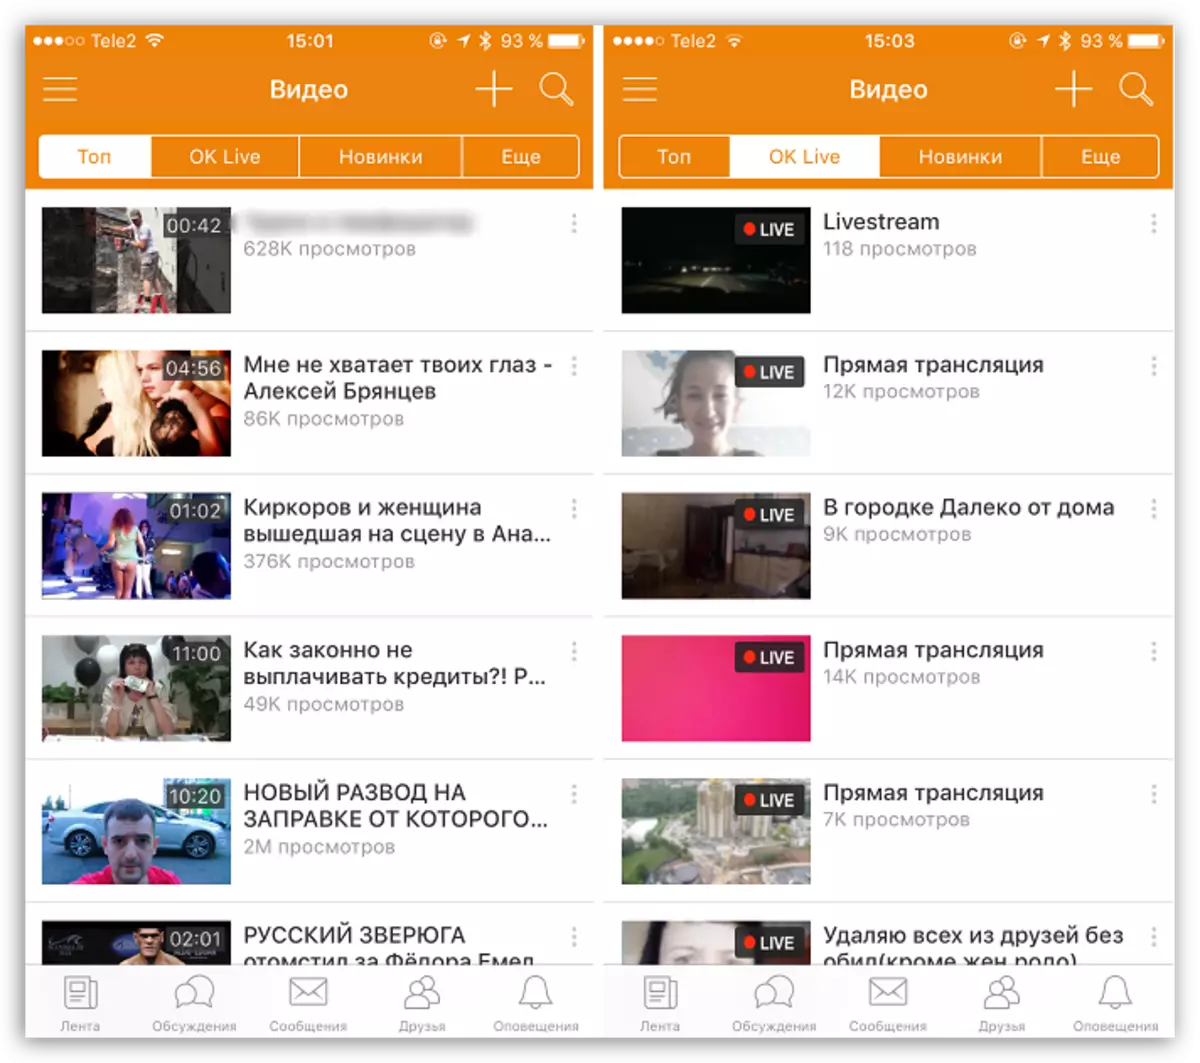 Video Hauv Apps Odnoklassniki Rau iOS